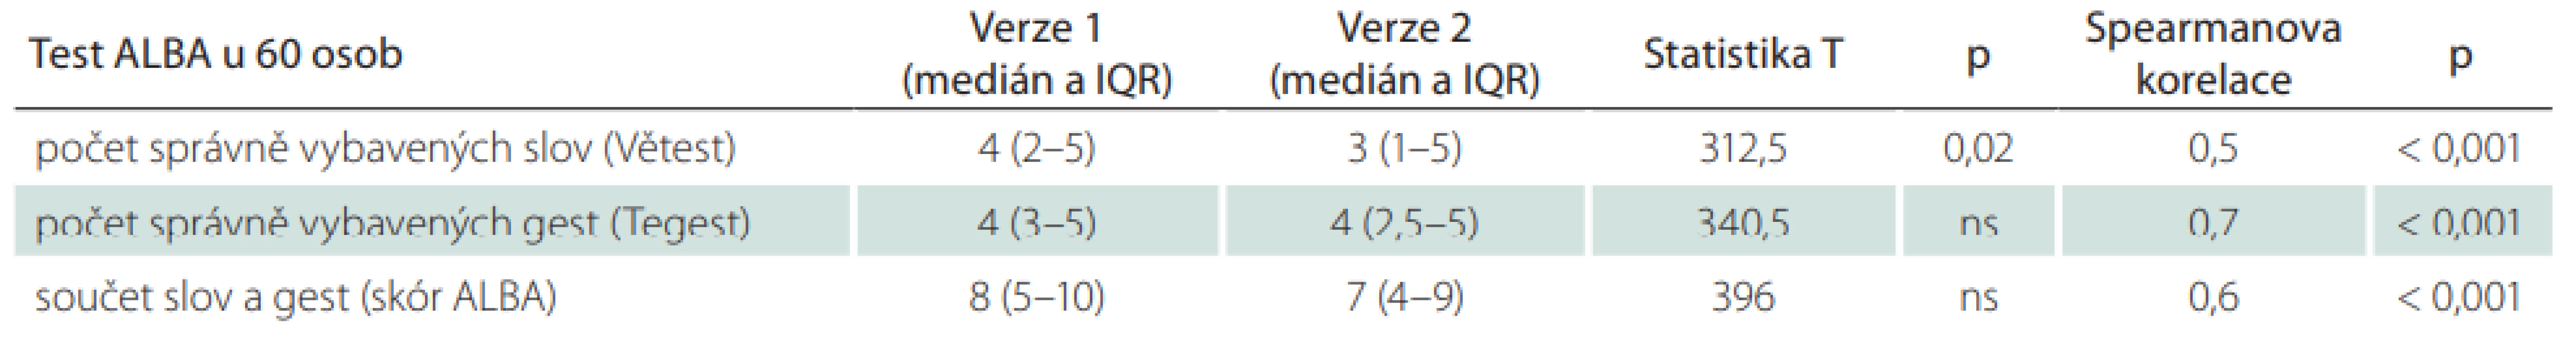  Skóry obou verzí testu ALBA a jejich porovnání a korelace mezi oběma verzemi ve společném souboru pacientů a kontrolních starších osob (n = 60)